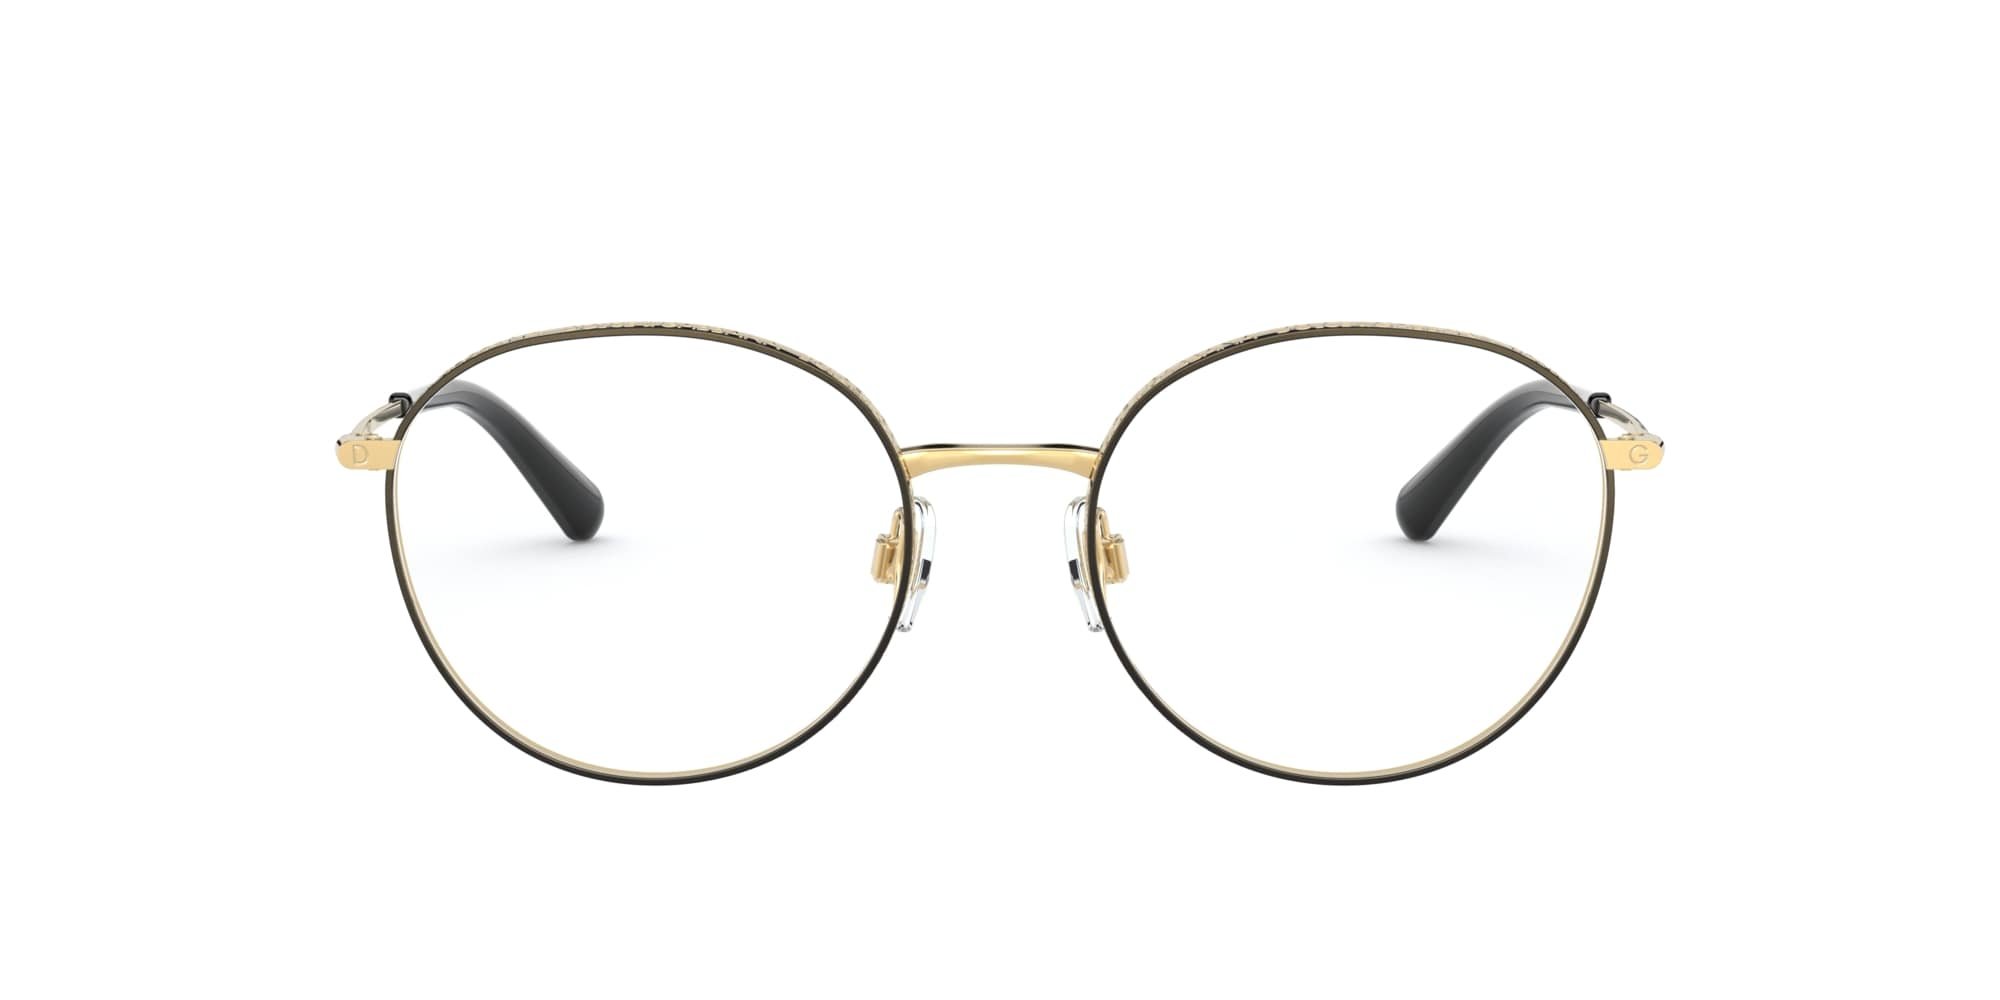 Das Bild zeigt die Korrektionsbrille DG1322 1334 von der Marke D&G in gold-schwarz.